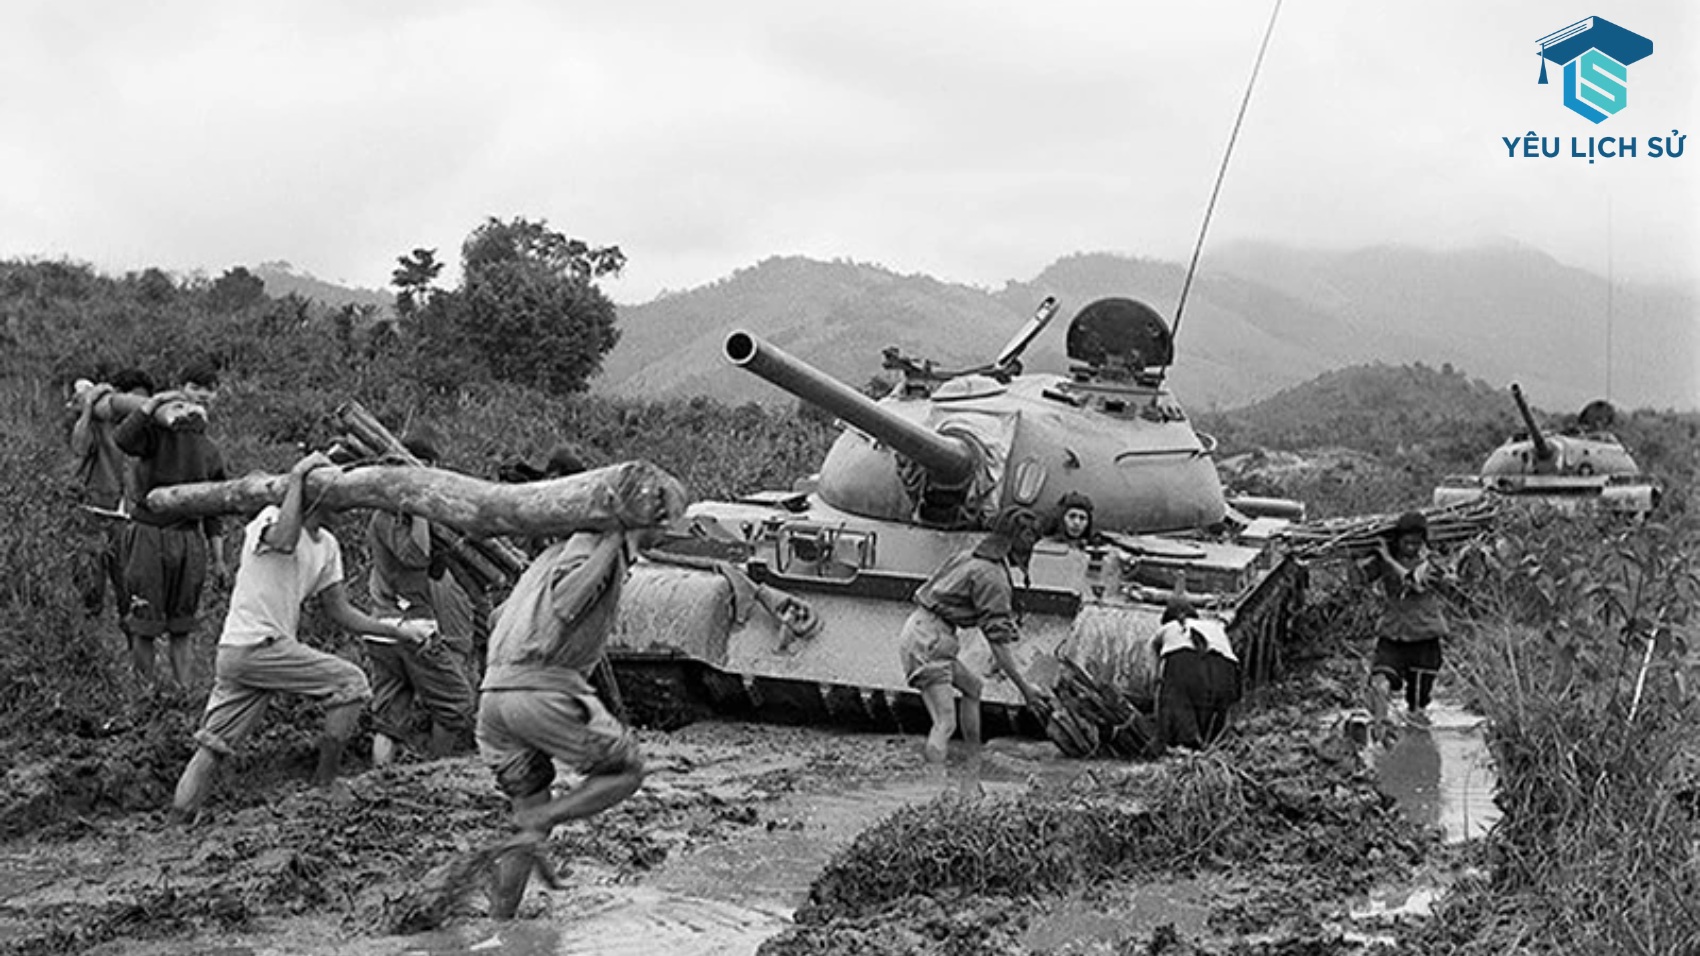 Chiến đấu chống chiến lược “Việt Nam hóa chiến tranh” và “Đông Dương hóa chiến tranh” của Mỹ (1969-1973)